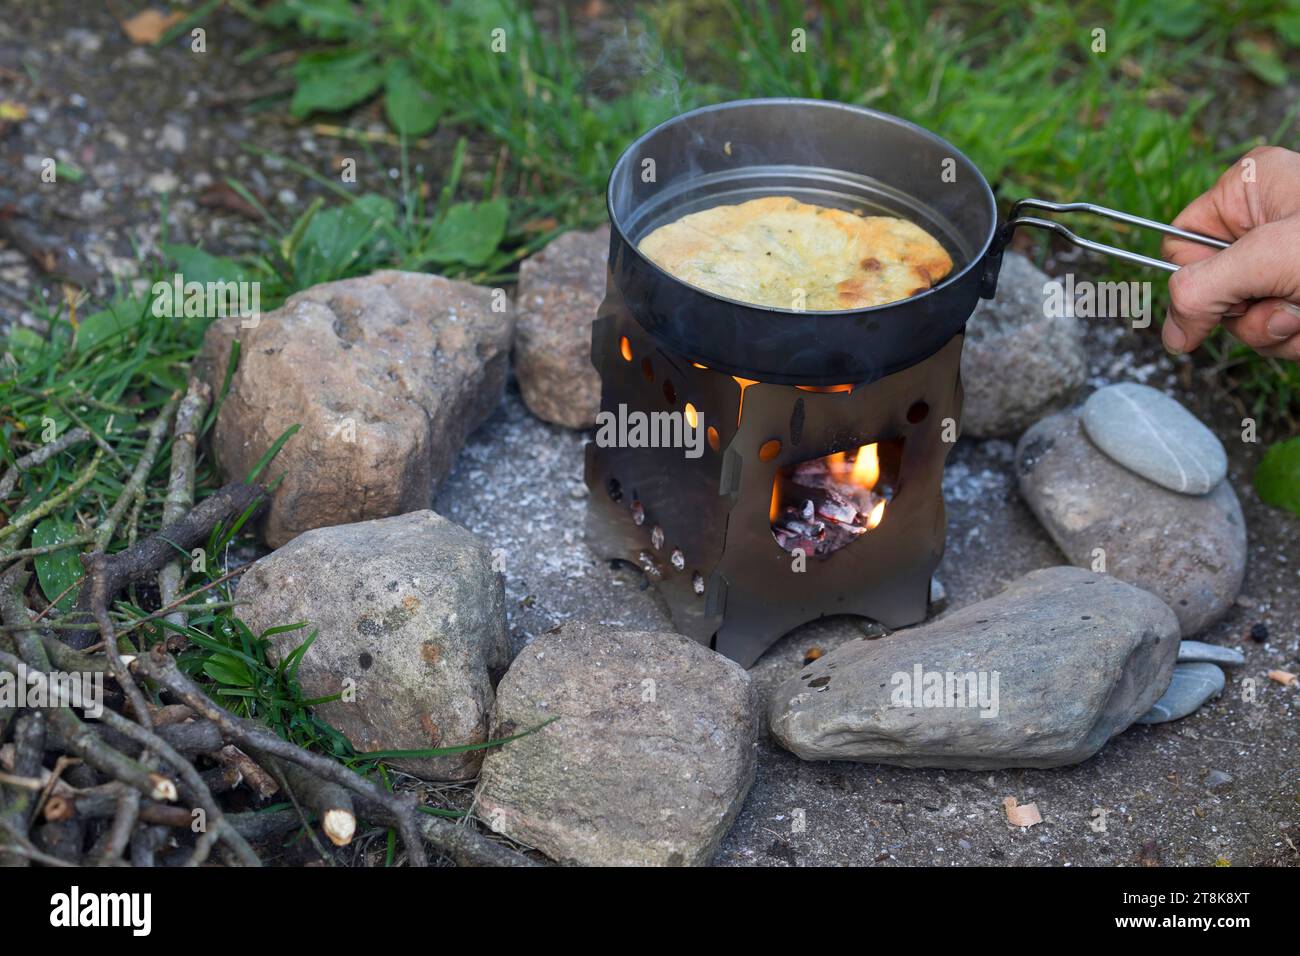 Bannockherstellung, wird auf offenem Feuer gebacken, Brotteig wird gebildet und in einer Pfanne auf einem Campingkocher gebacken, Serienbild 5/5 Stockfoto